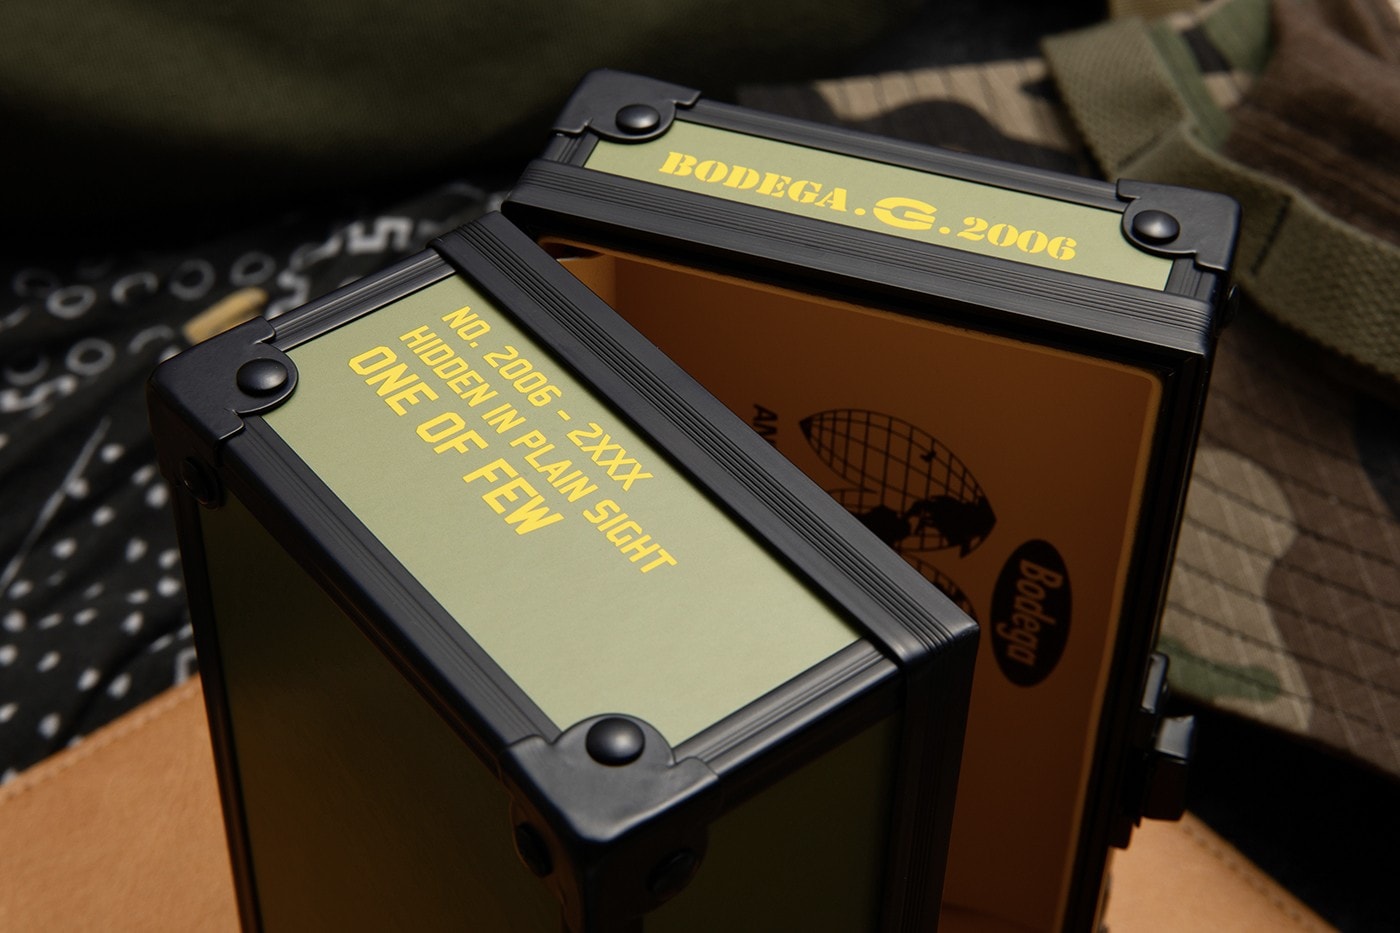 Bodega x G-Shock DW-5600 全新聯名錶款正式發佈